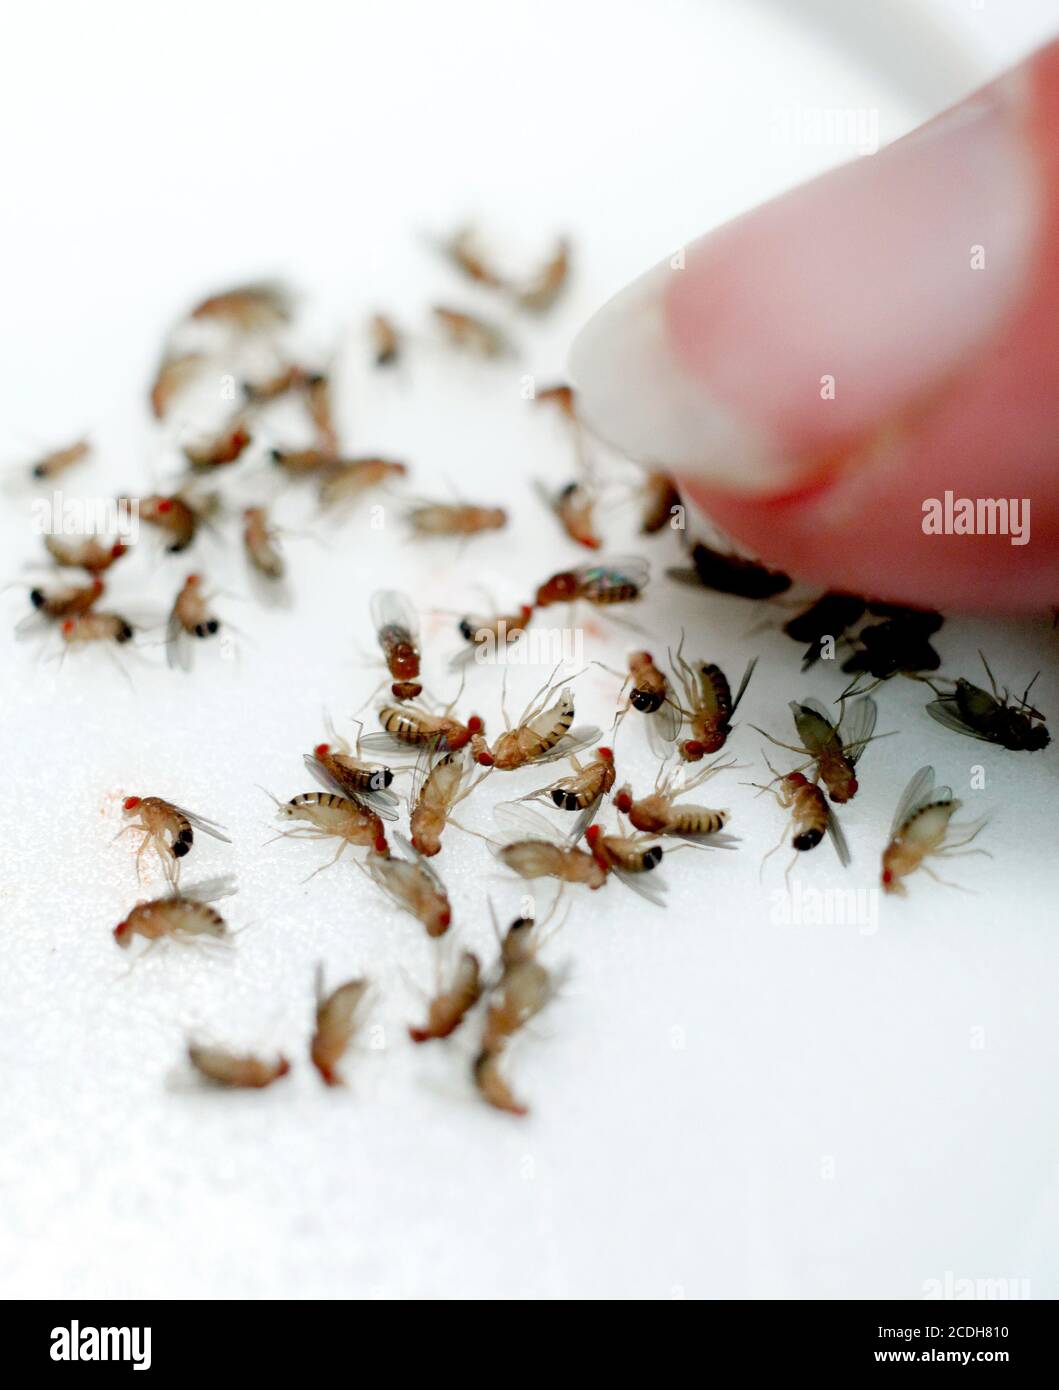 La mouche commune de fruits ou le vinaigre de mouche. Drosophila melanogaster est une espèce de mouche (l'ordre taxonomique Diptera) de la famille des Drosophilidae. Photo Jeppe Gustafsson Banque D'Images